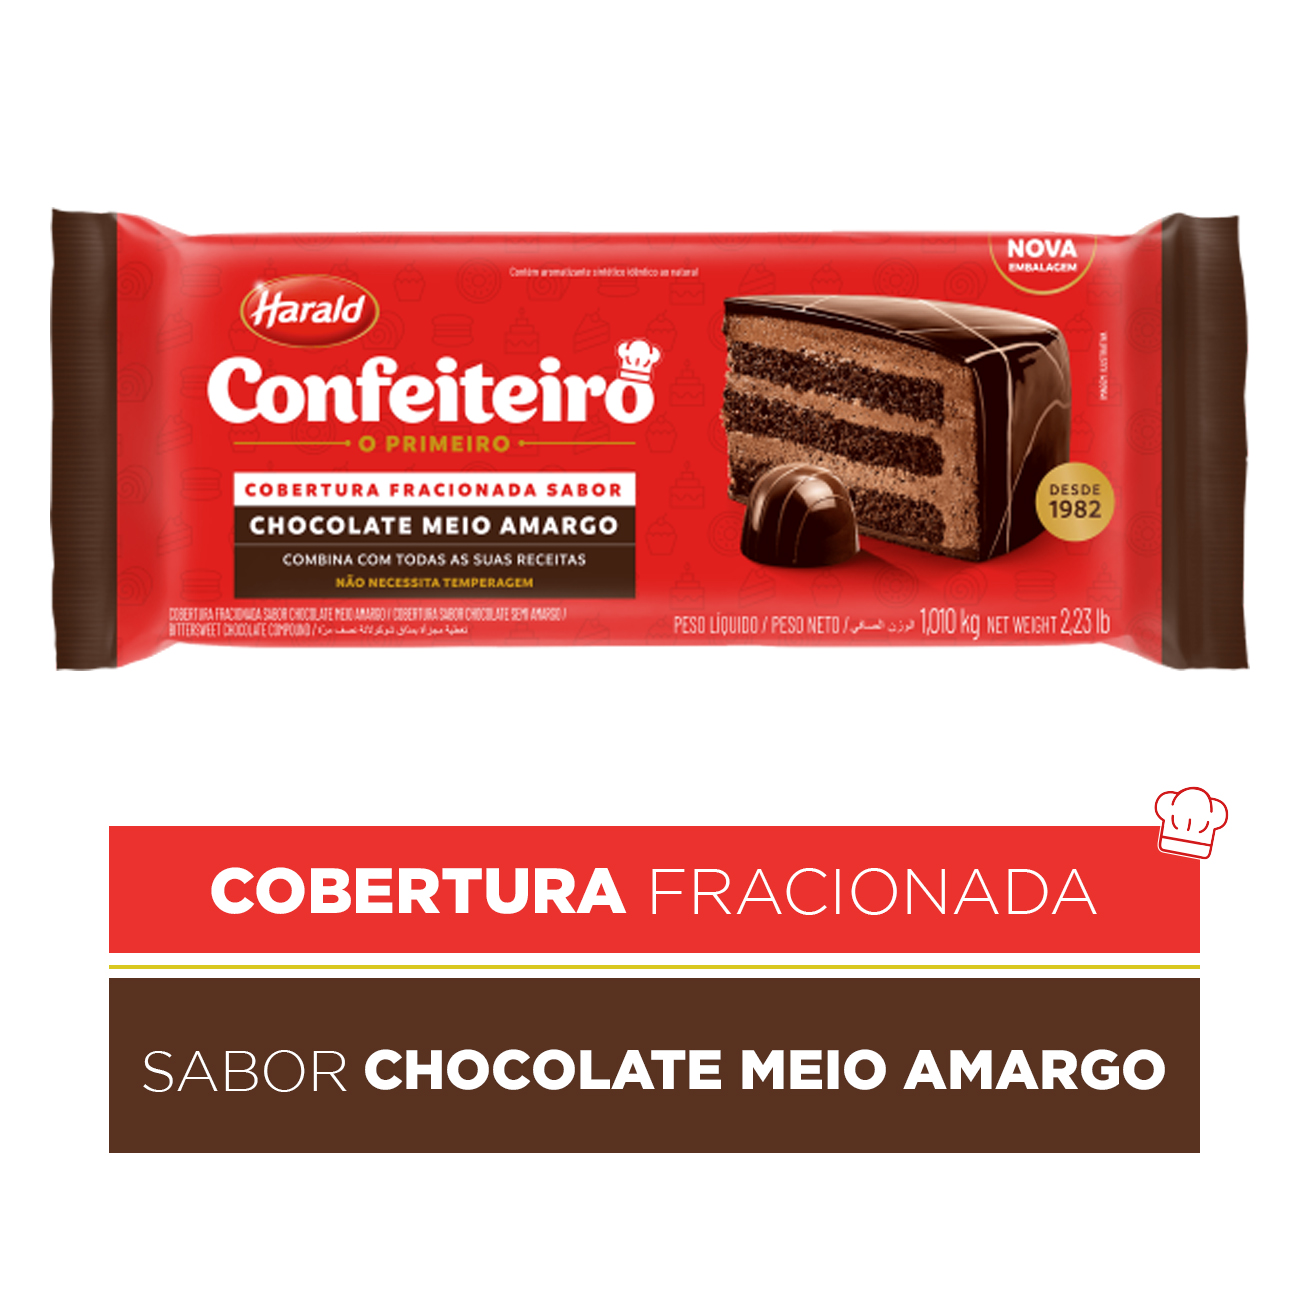 Chocolate Meio Amargo Confeiteiro Harald 1,01kg